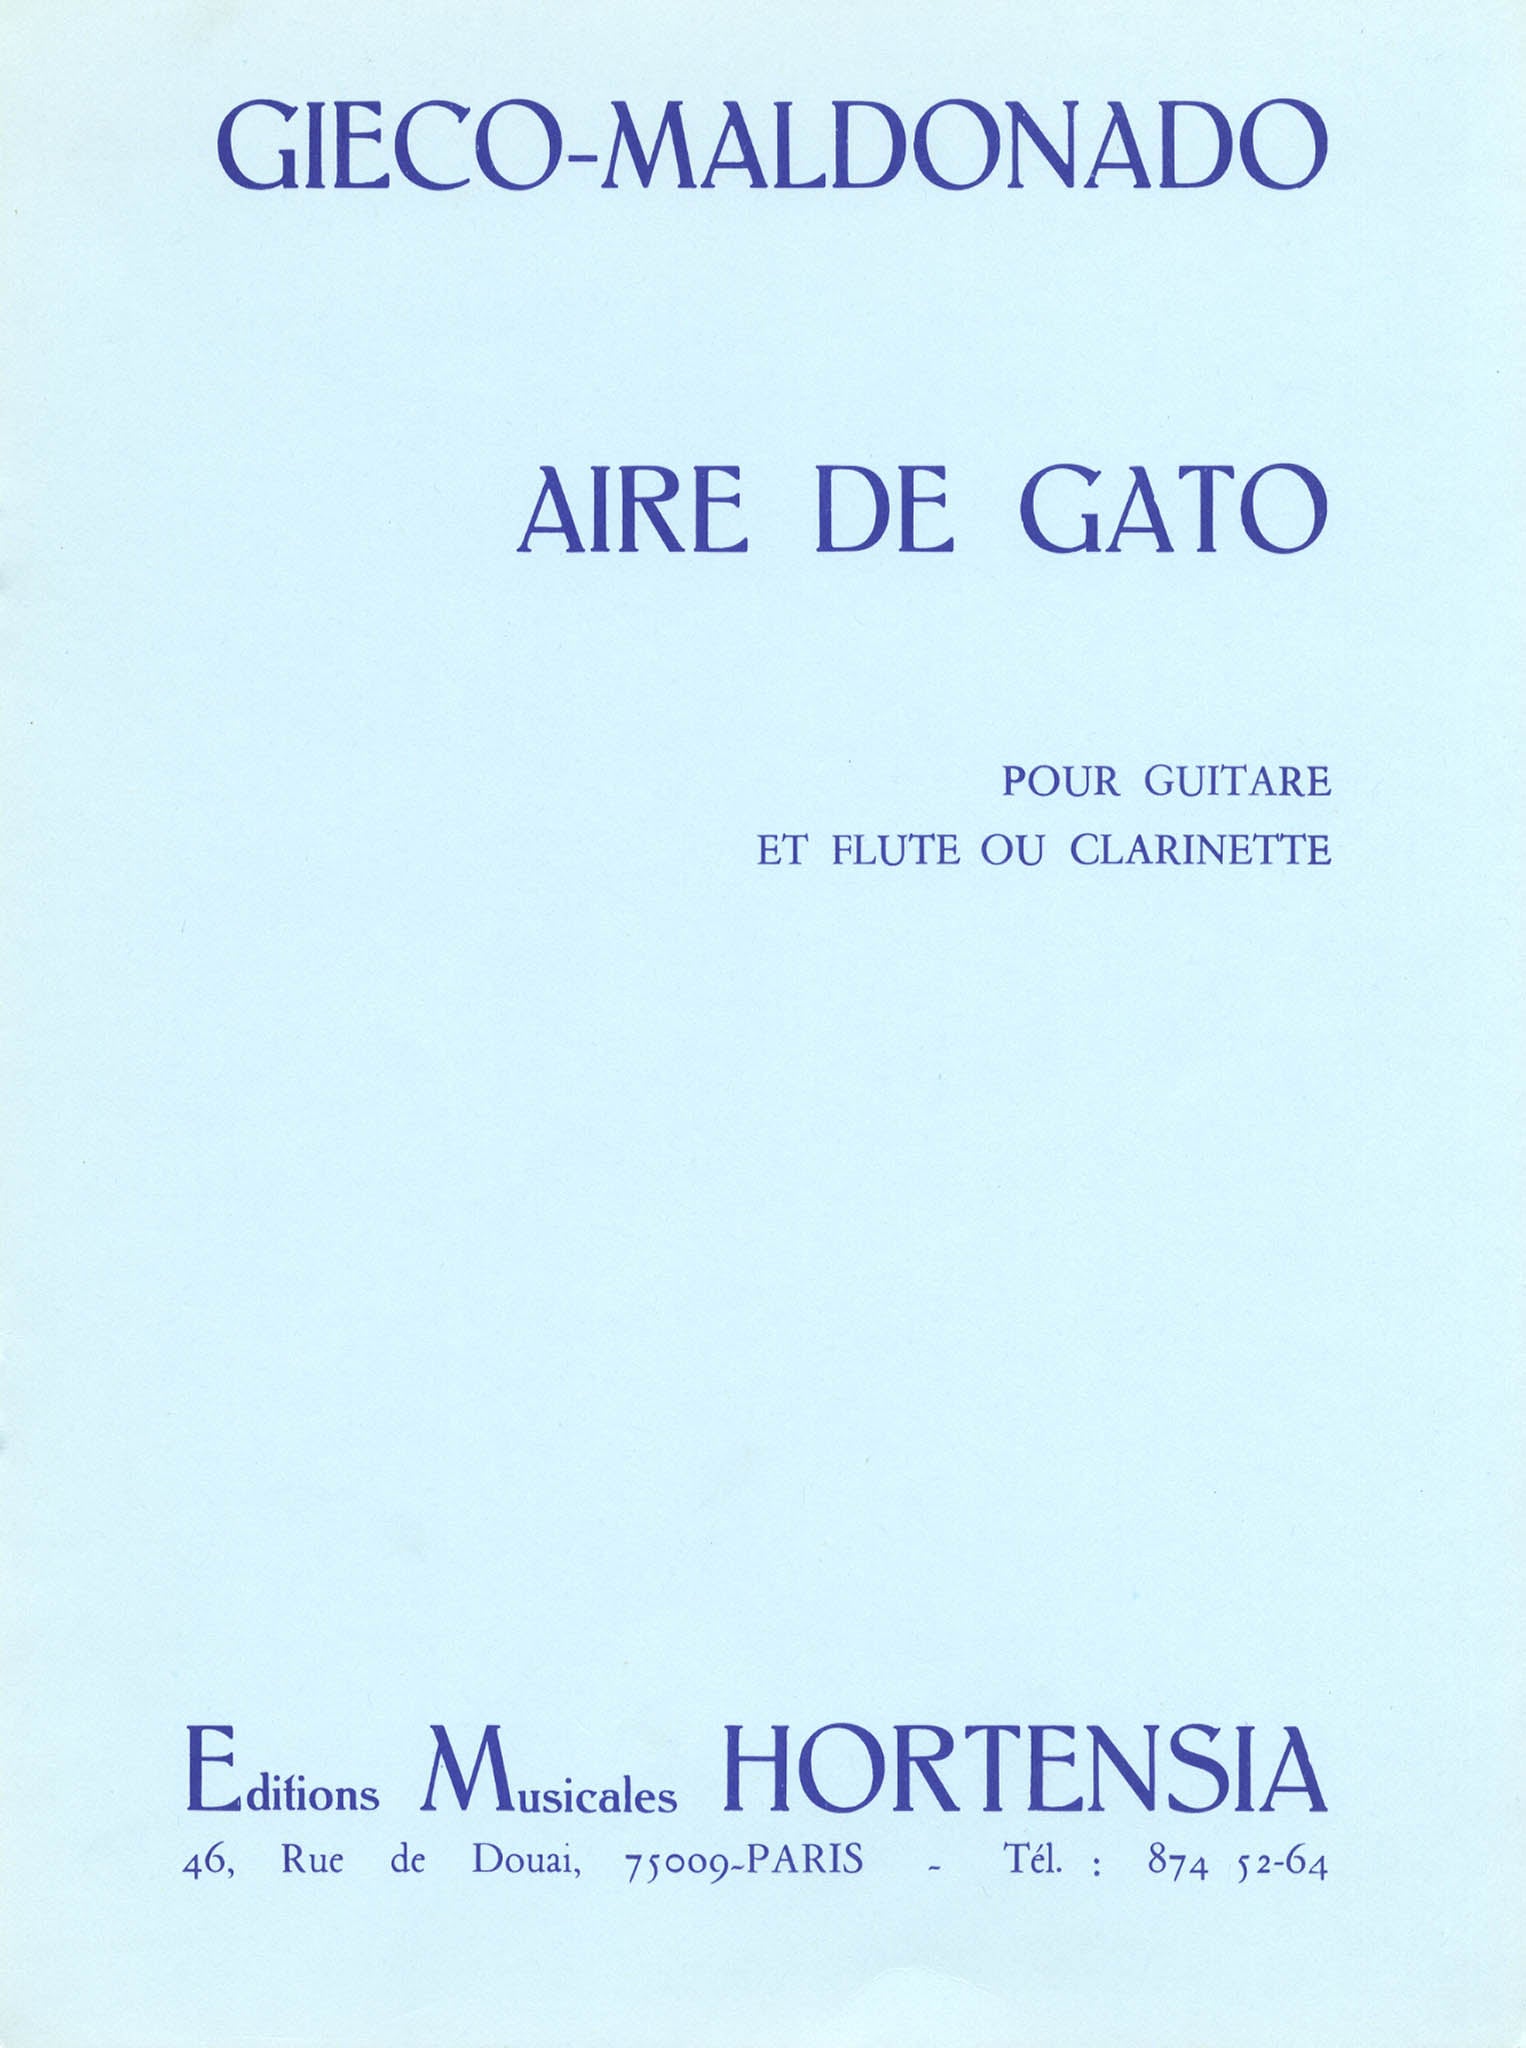 Raúl Maldonado Aire de Gato clarinet and guitar cover